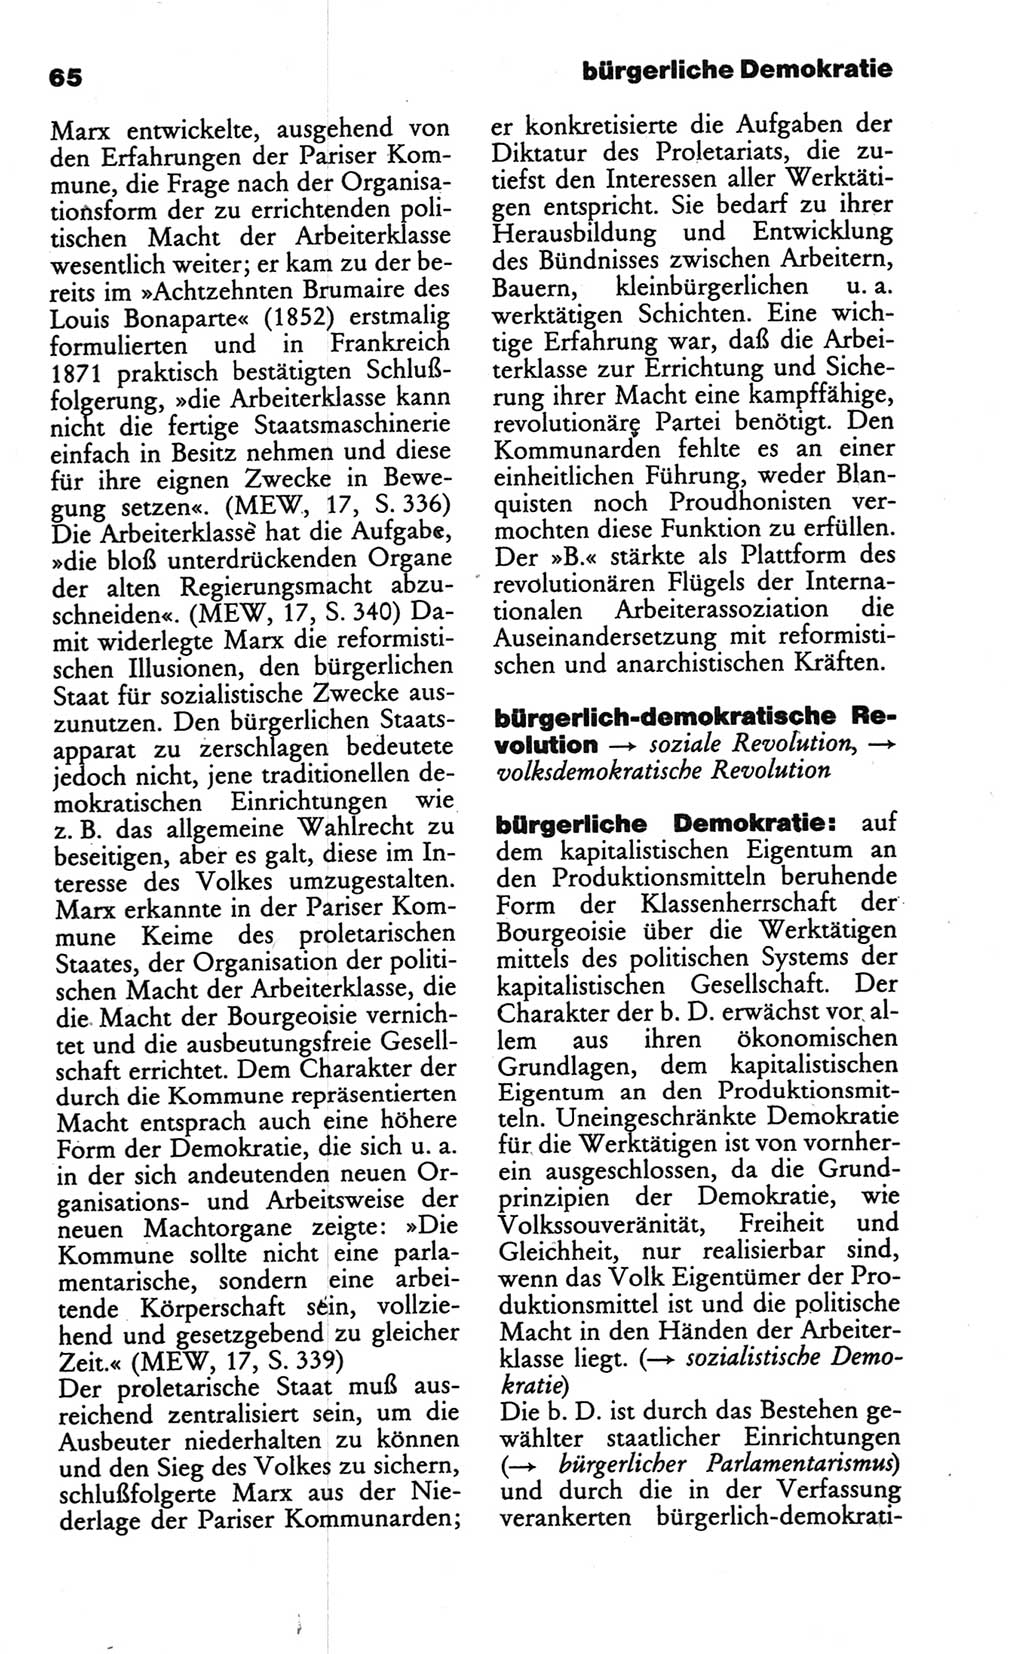 Wörterbuch des wissenschaftlichen Kommunismus [Deutsche Demokratische Republik (DDR)] 1986, Seite 65 (Wb. wiss. Komm. DDR 1986, S. 65)